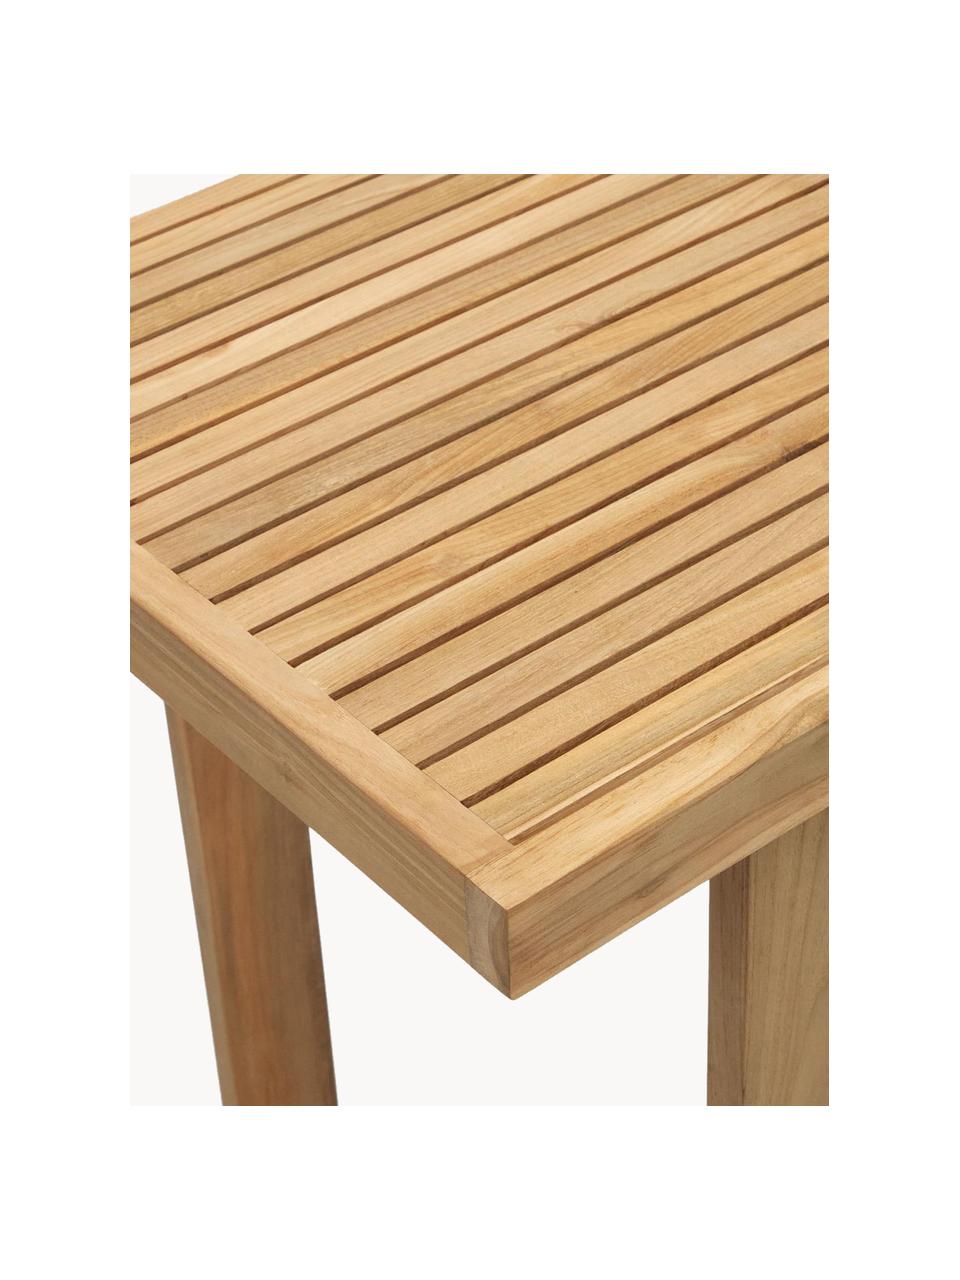 Stół z drewna tekowego Canadell, W 105 cm, 100% drewno tekowe, Drewno tekowe, S 140 x G 70 cm